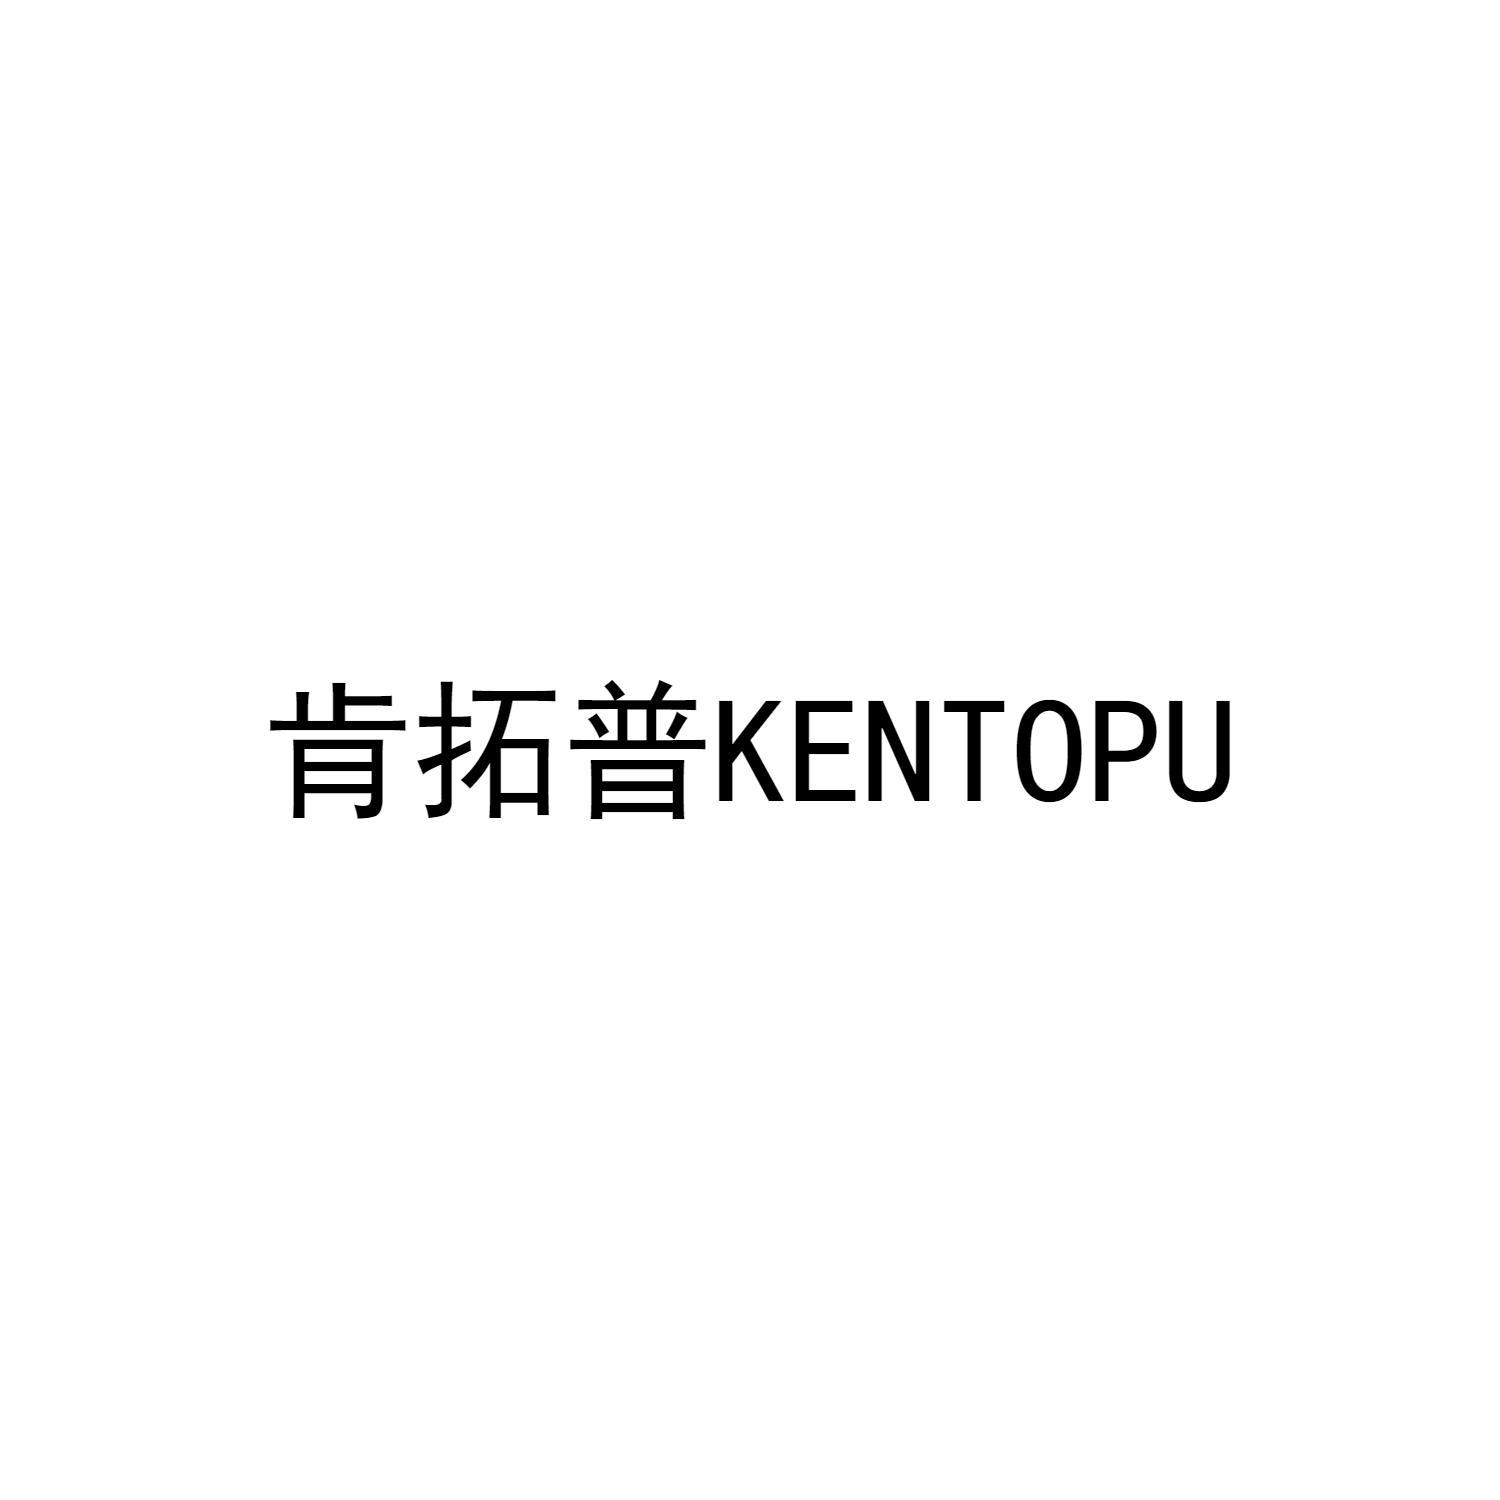 肯拓普KENTOPU 商标公告